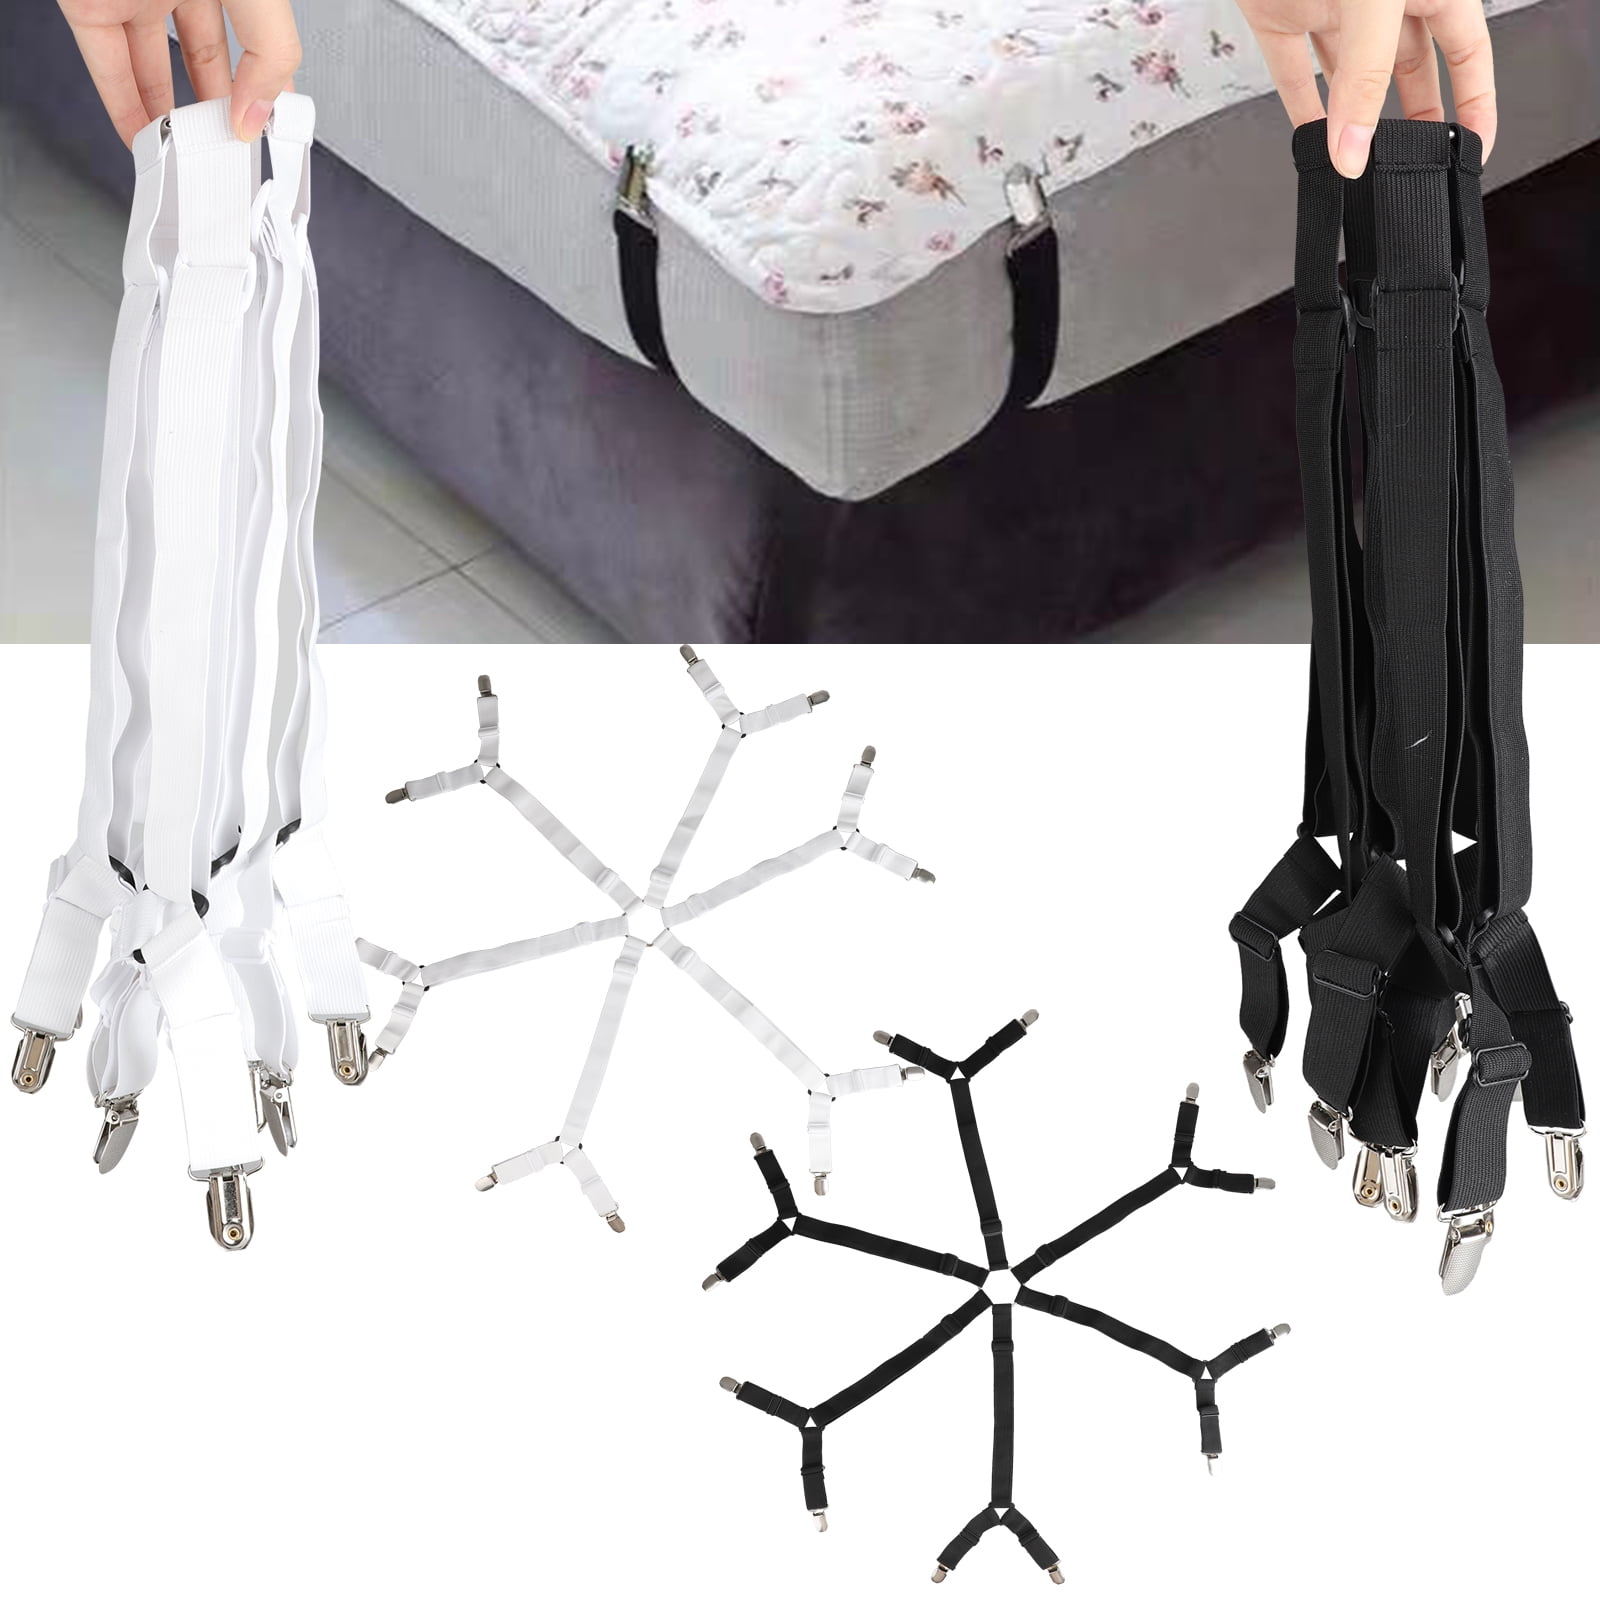 Bed Sheet Fastener Suspenders Adjustable Fitted Holder Straps Elastic Gripper 